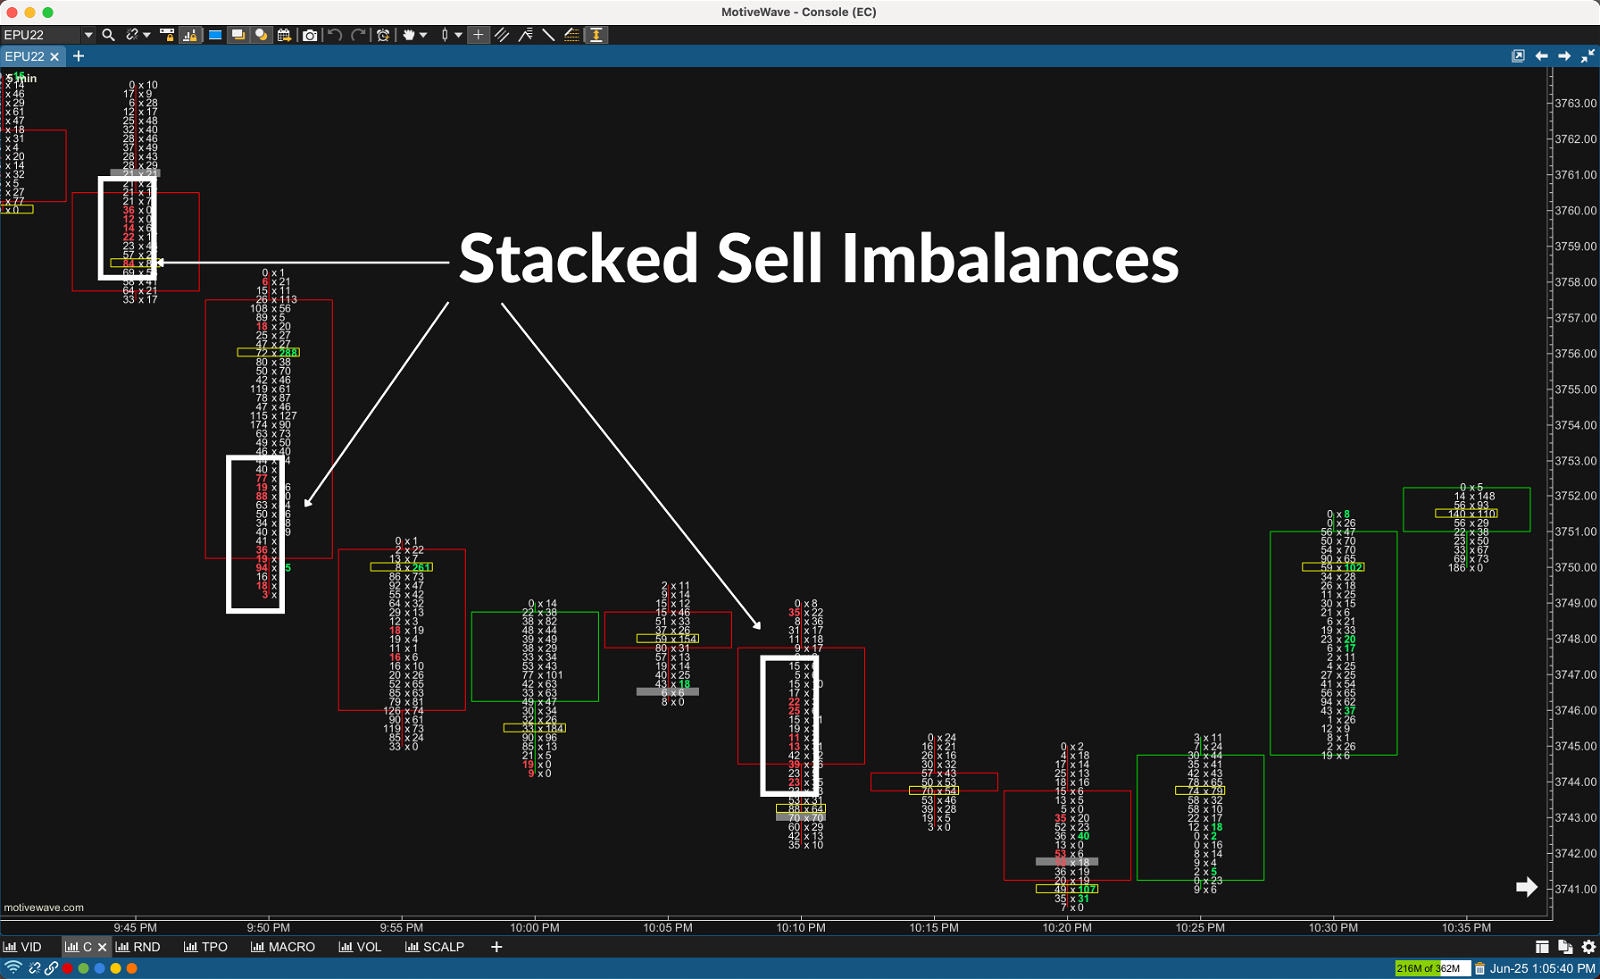 Bid/Ask Footprint Chart with Stacked Sell Imbalances